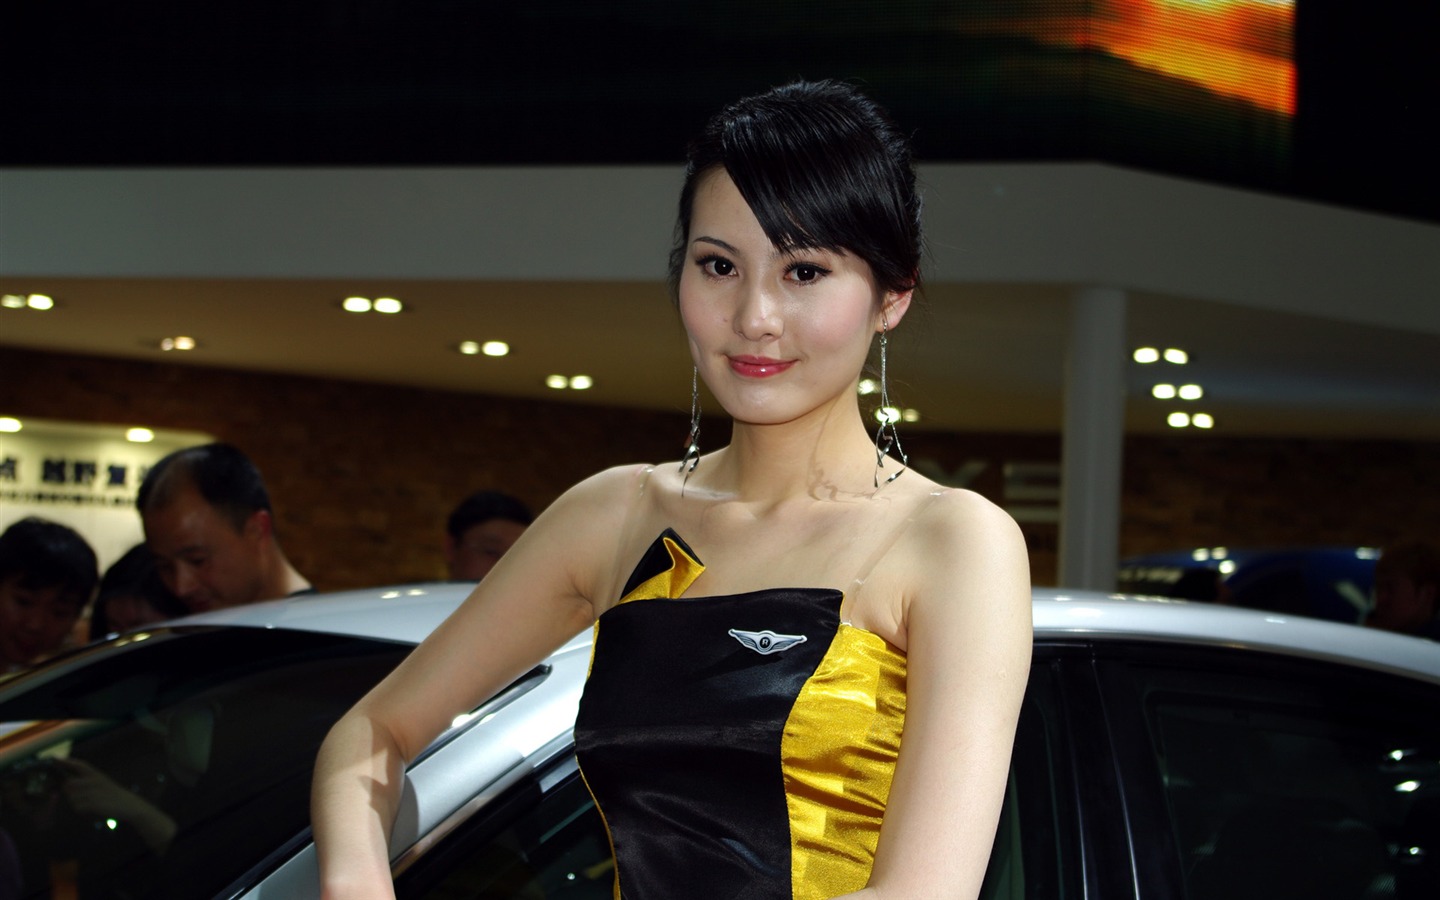 2010 북경 국제 자동차 전시회 (선샤인 비치 작품) #10 - 1440x900